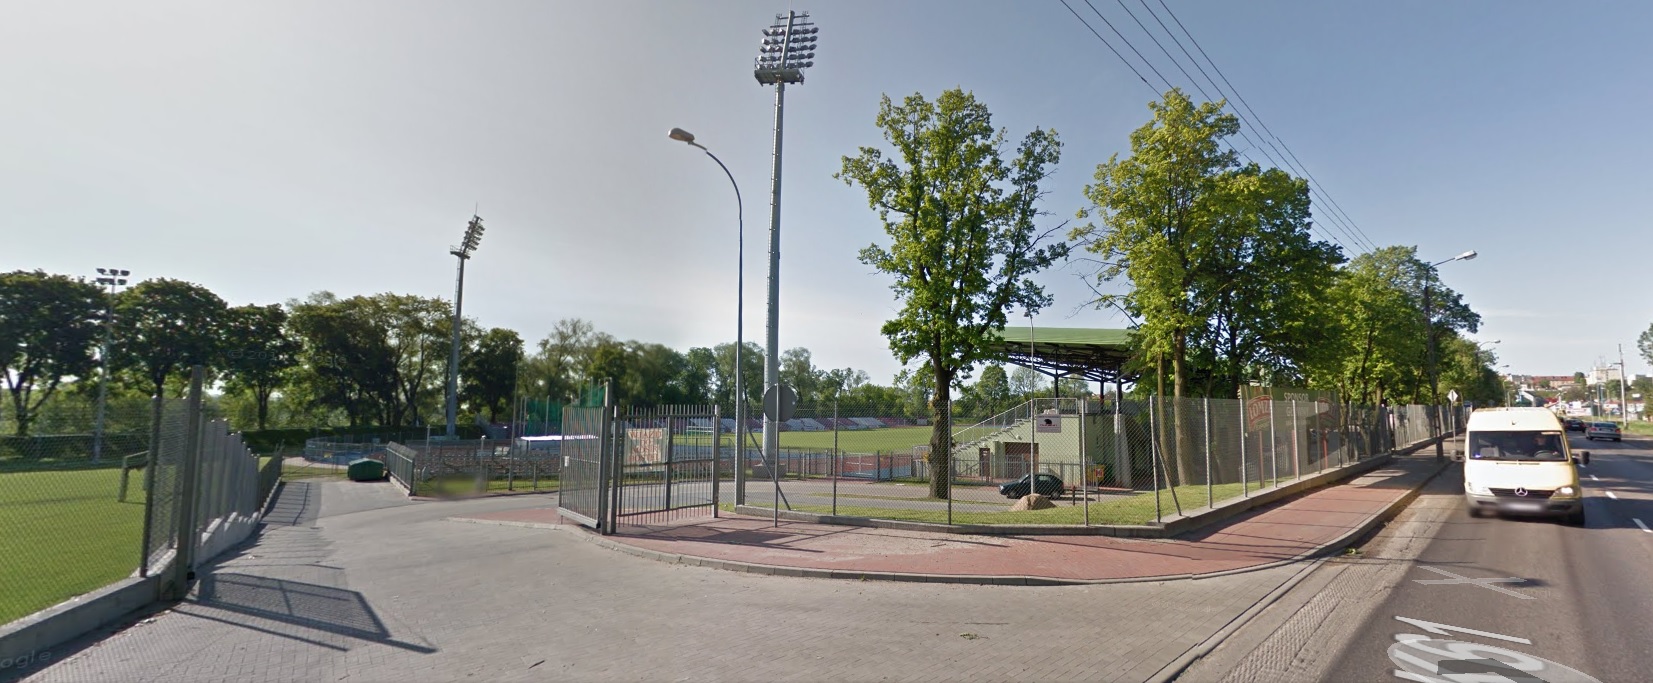 zdjęcie google map przedstyawiające ulicę Zjazd, w tle ogrodzenie i boisko stadionu